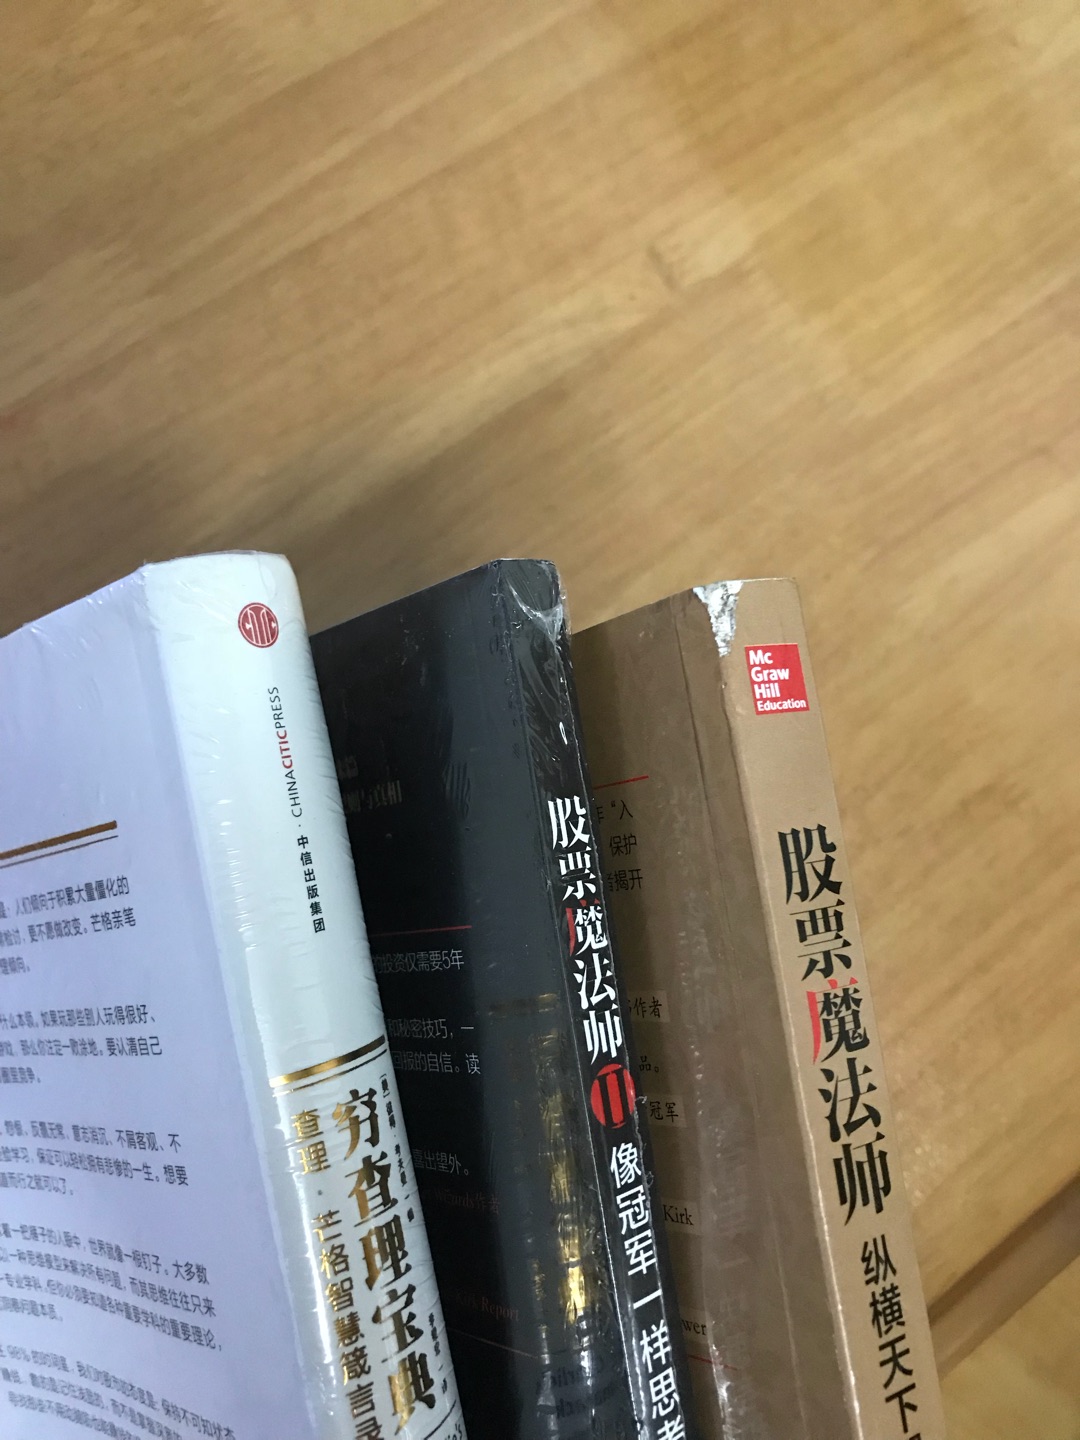 买了三本书，有一本书没有塑料薄膜包装，而且书角处破损。